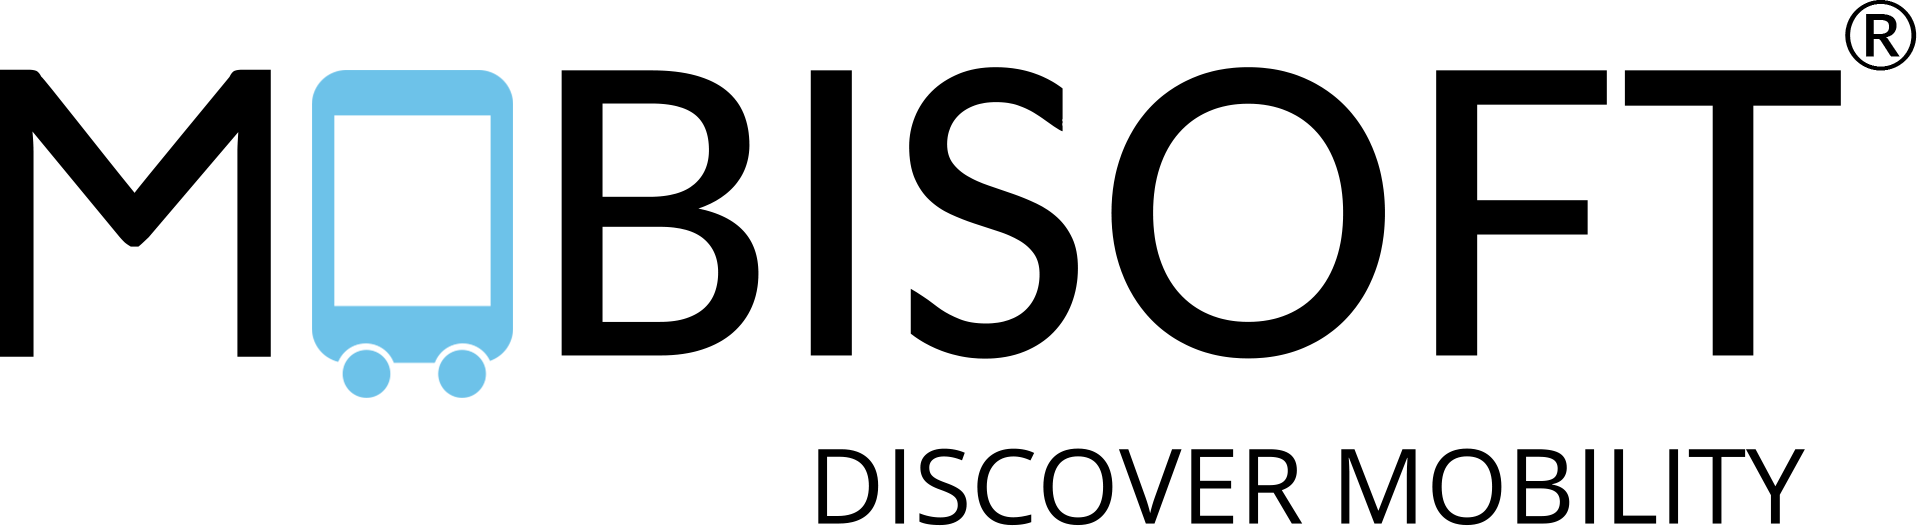 Mobisoft Infotech logo